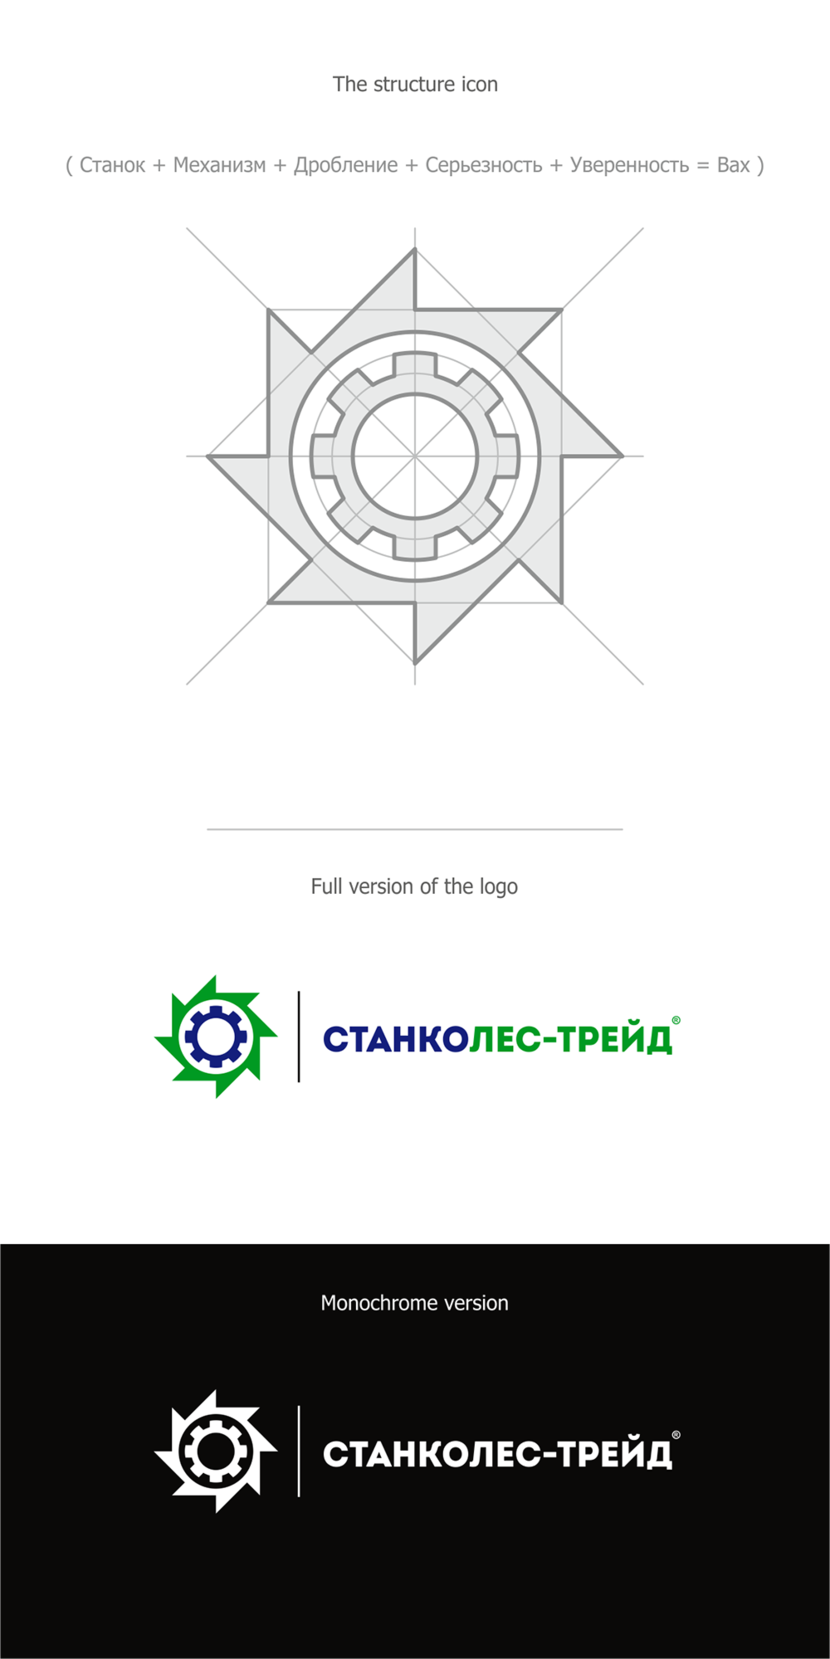 + - Создание логотипа для компании, которая занимается производством станков